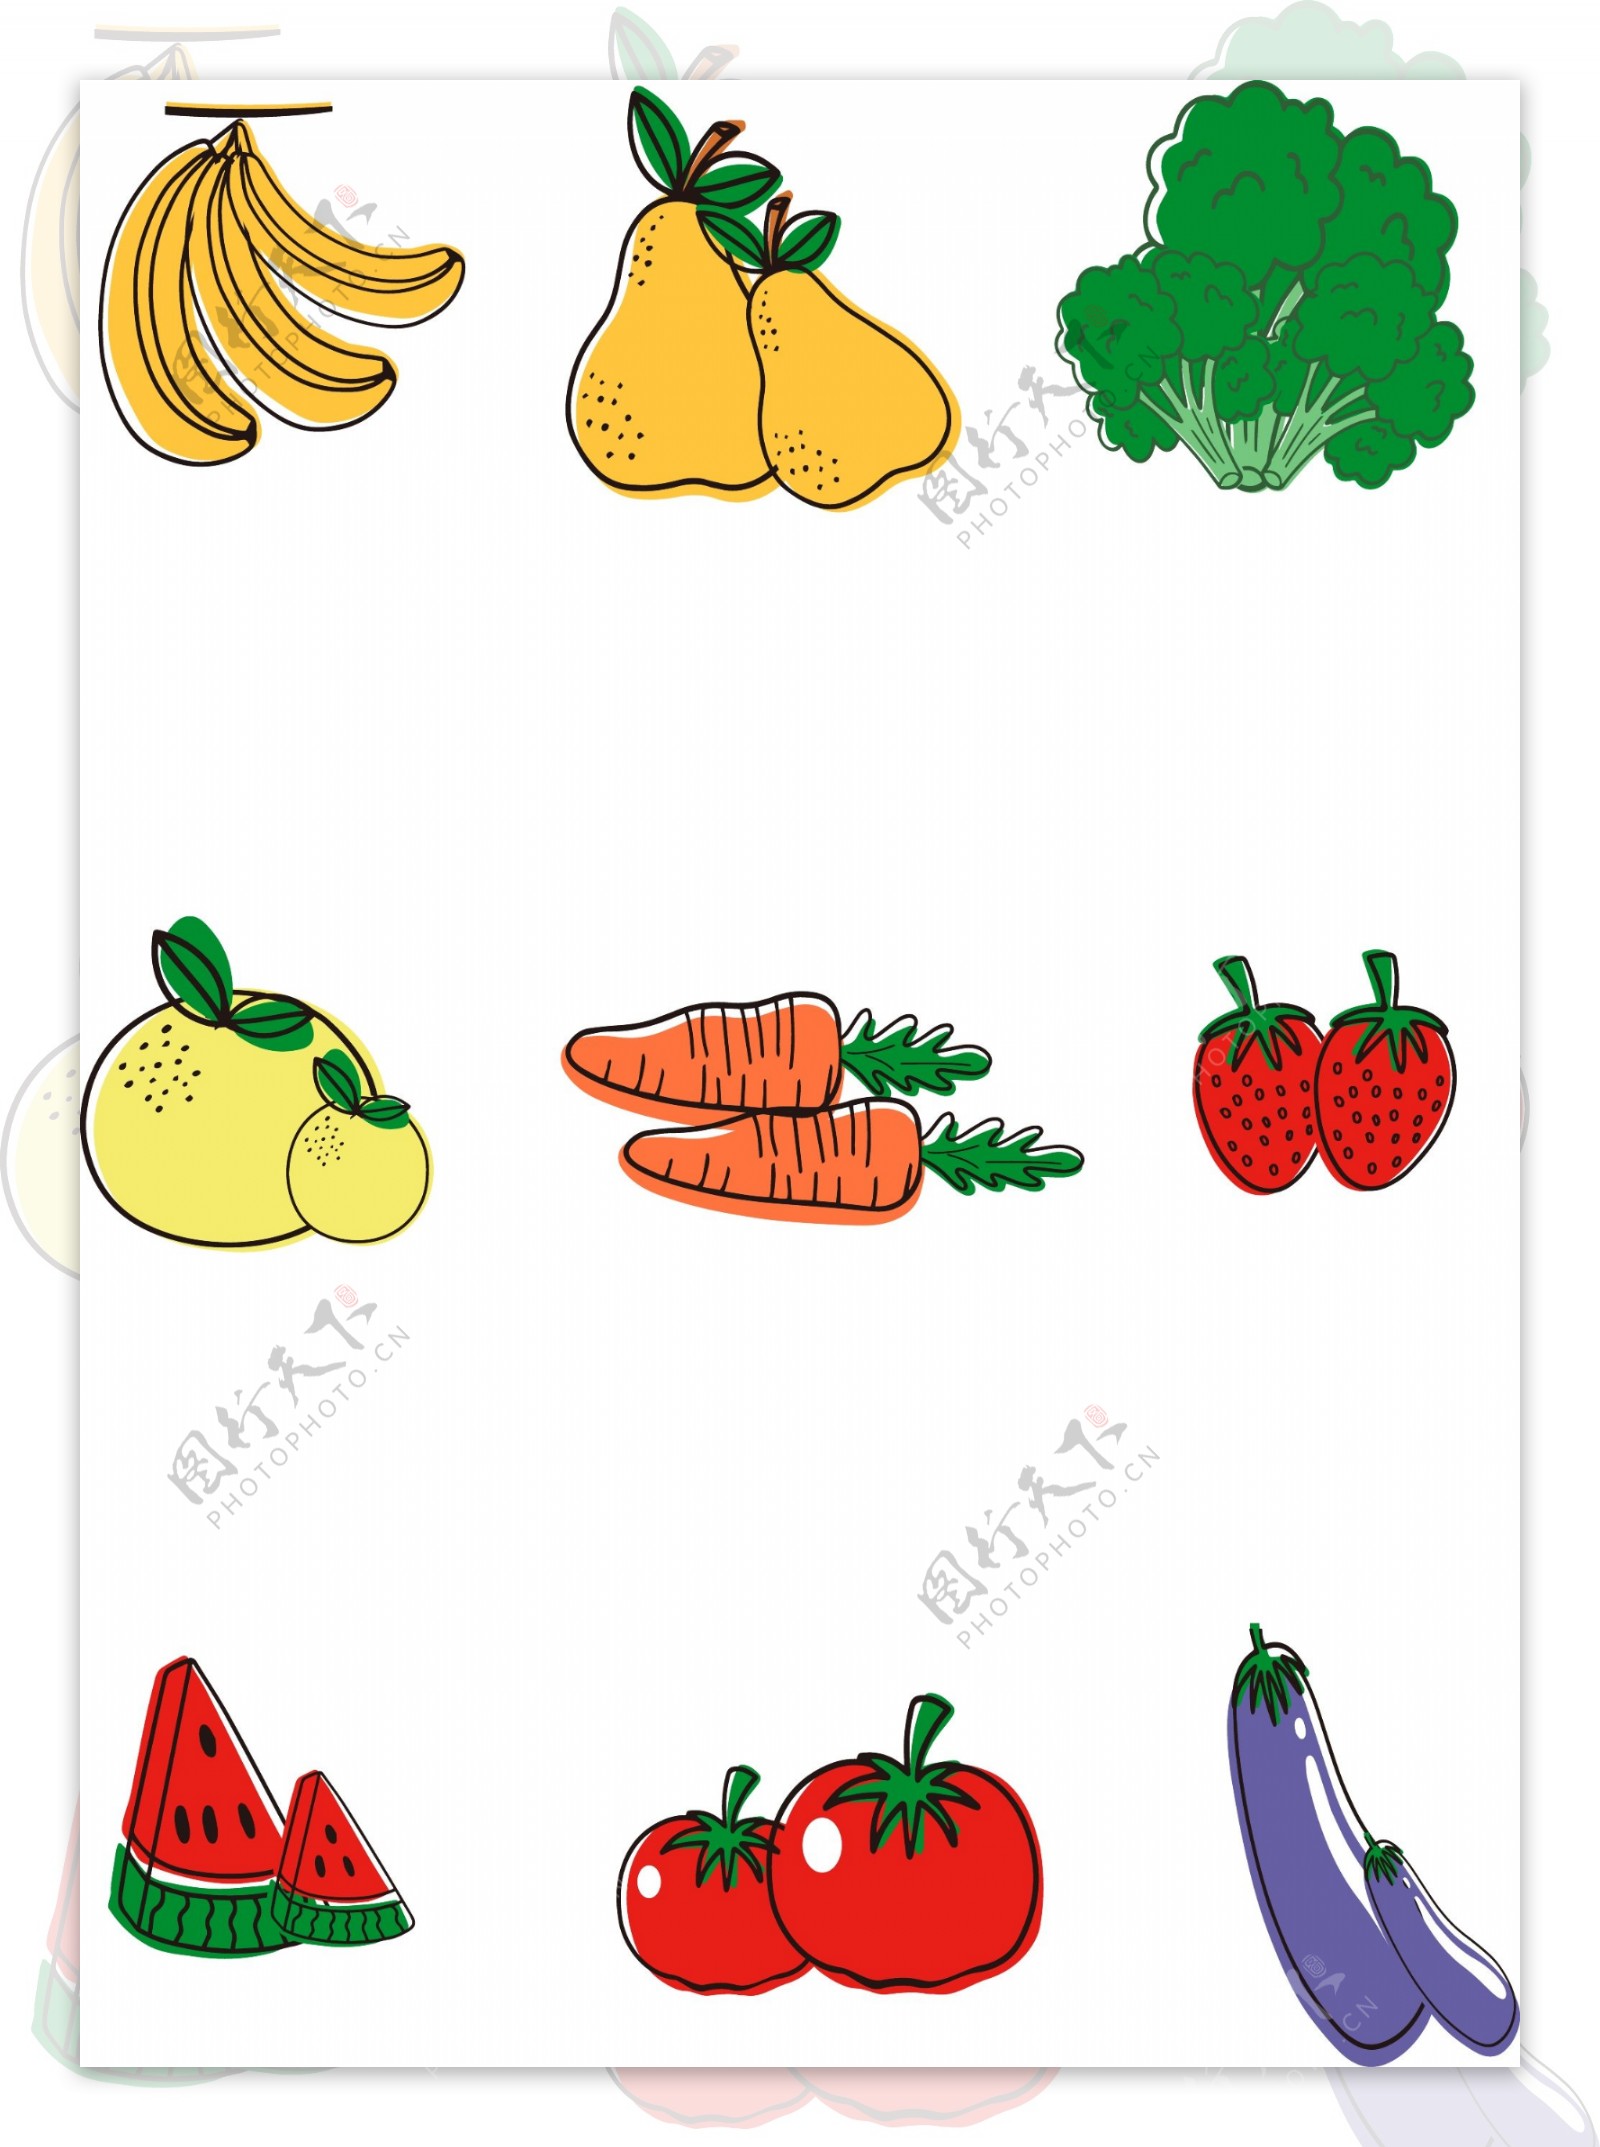 卡通风彩色手绘水果蔬菜元素